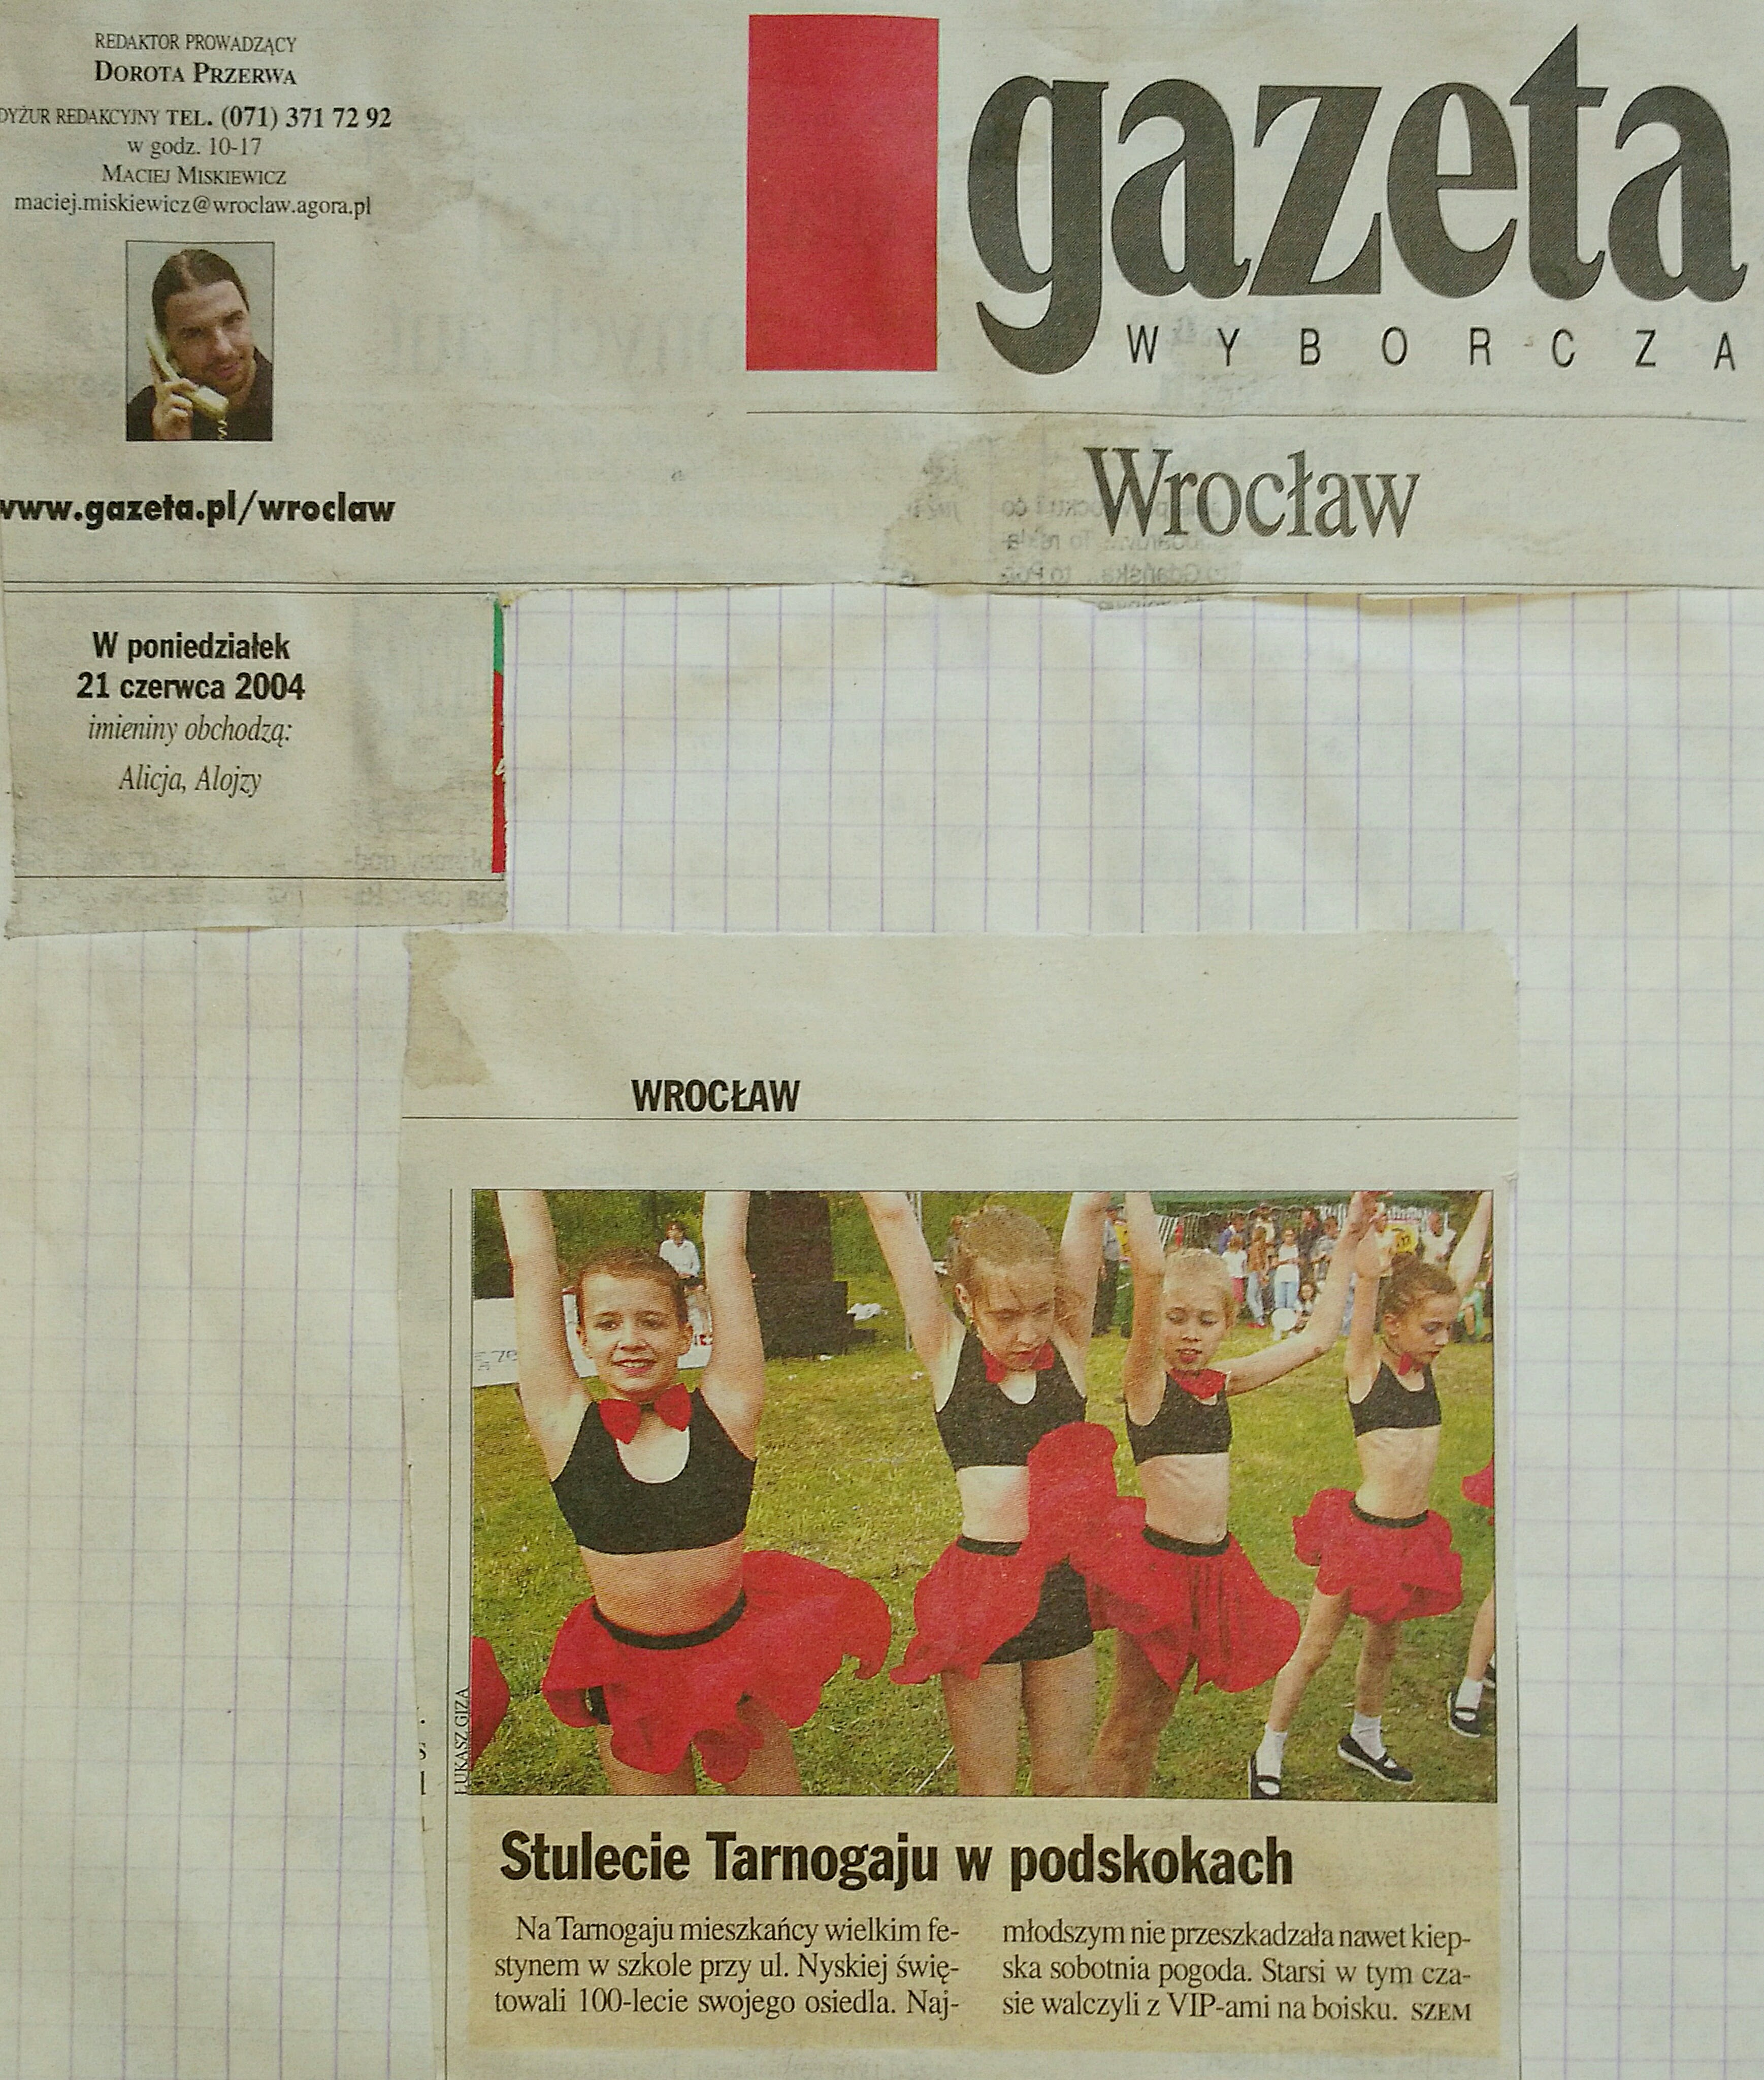 6 21 czerwca Gazeta Wyborcza